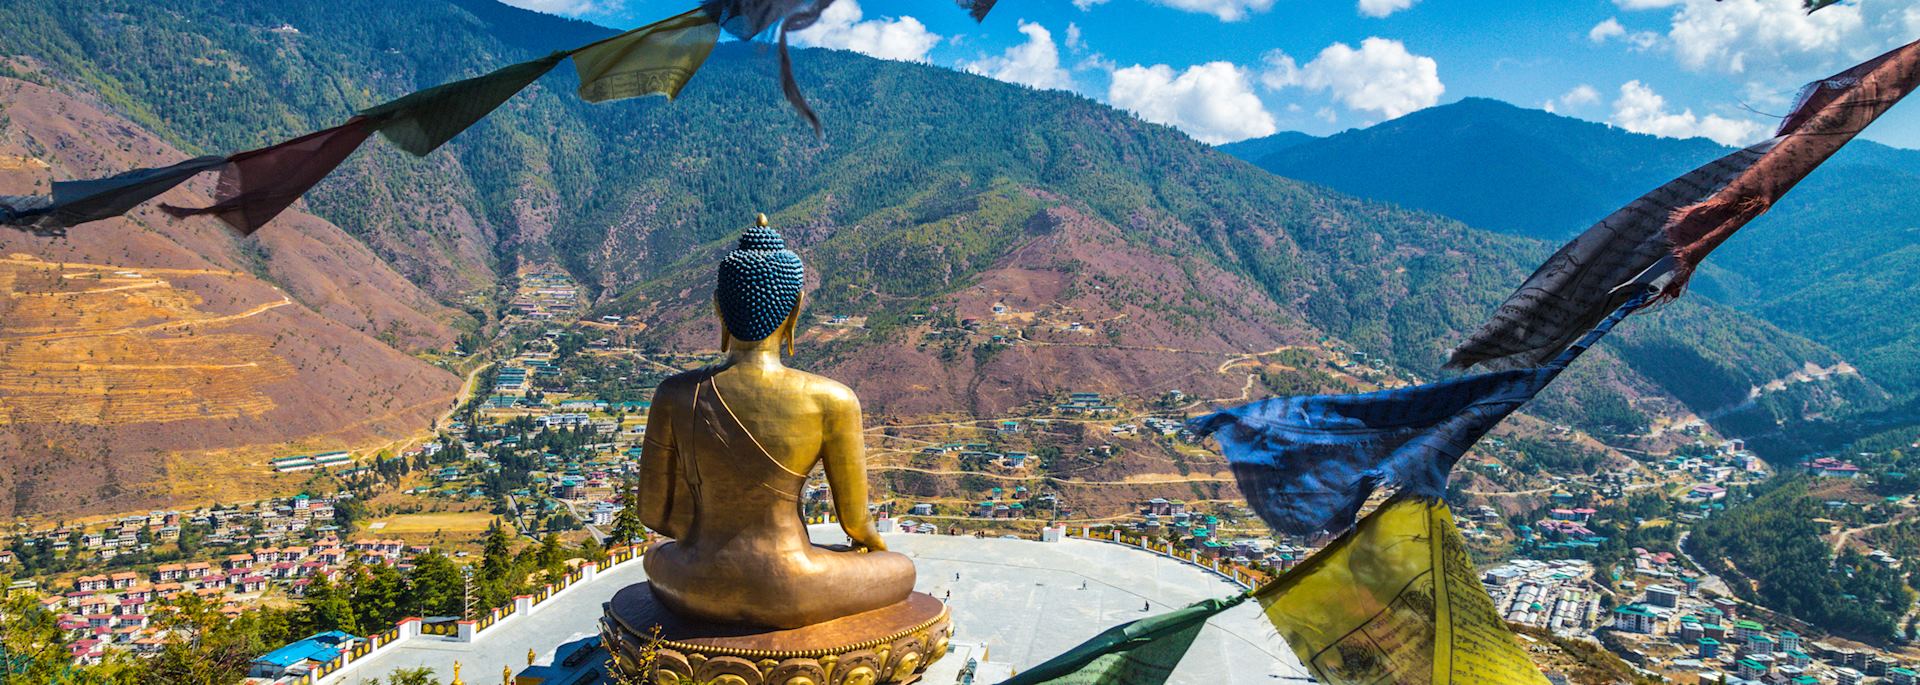 Golden Buddha near Thimphu